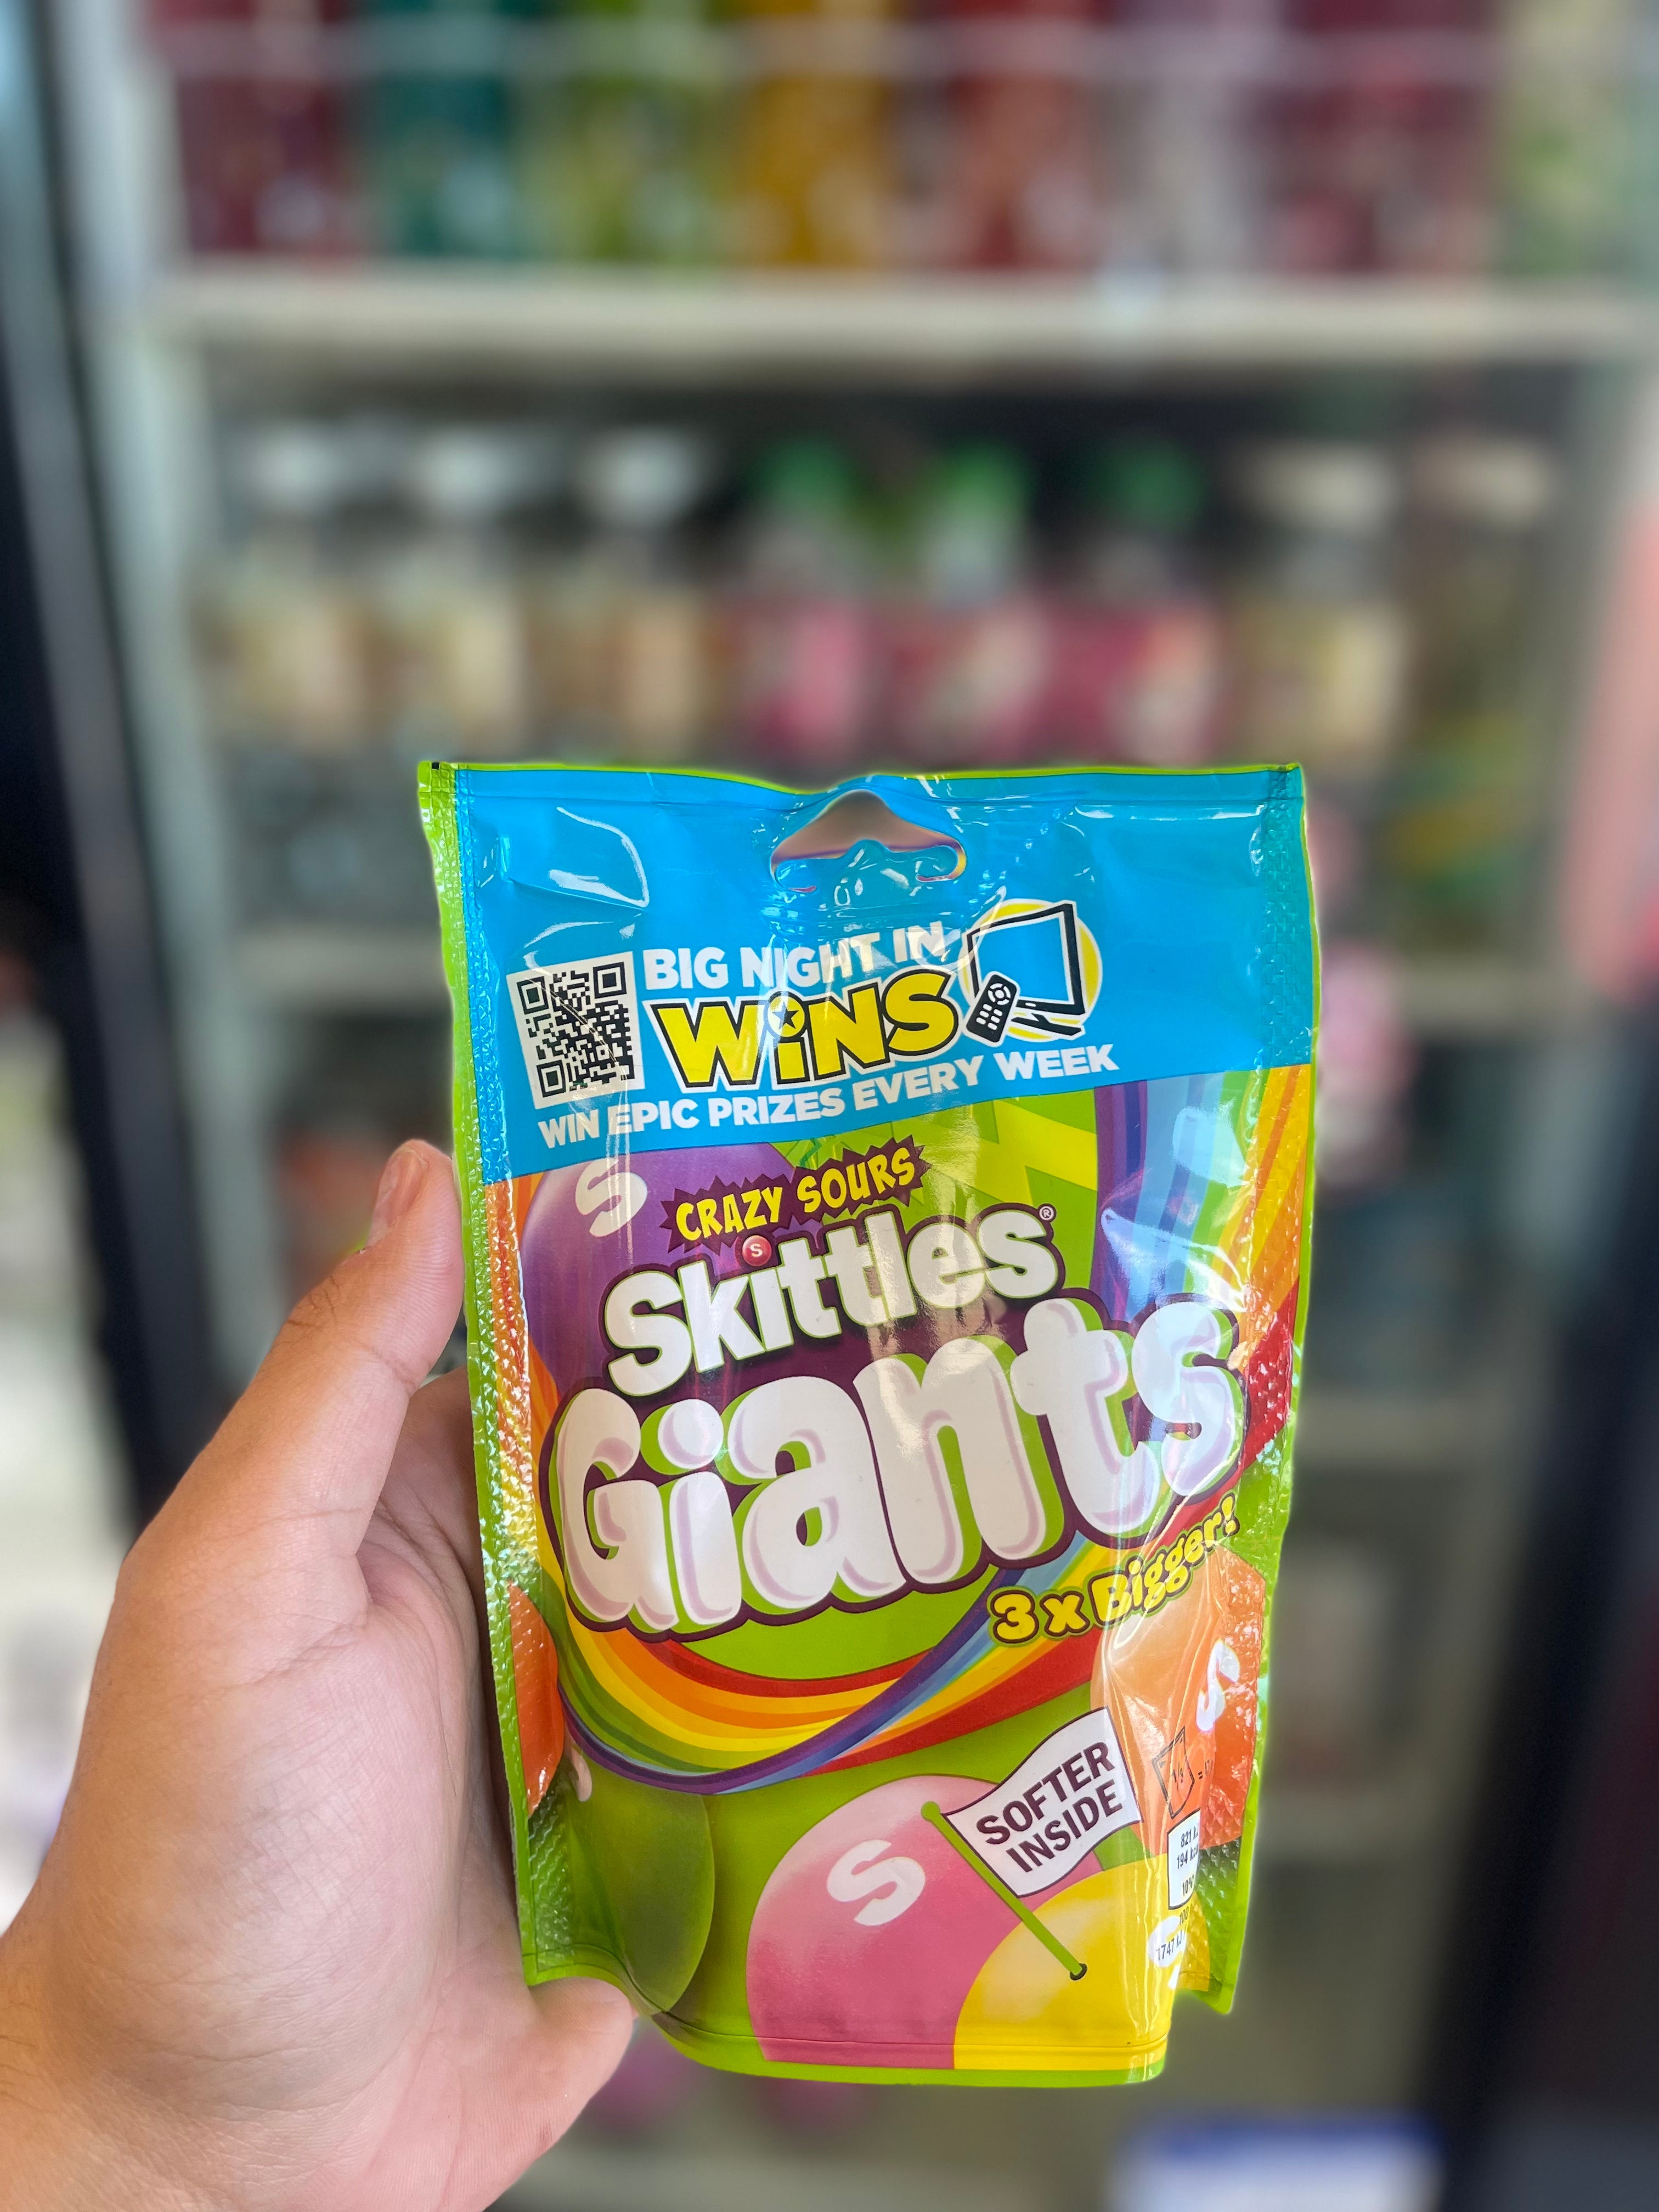 Skittles Sour Giants “UK”